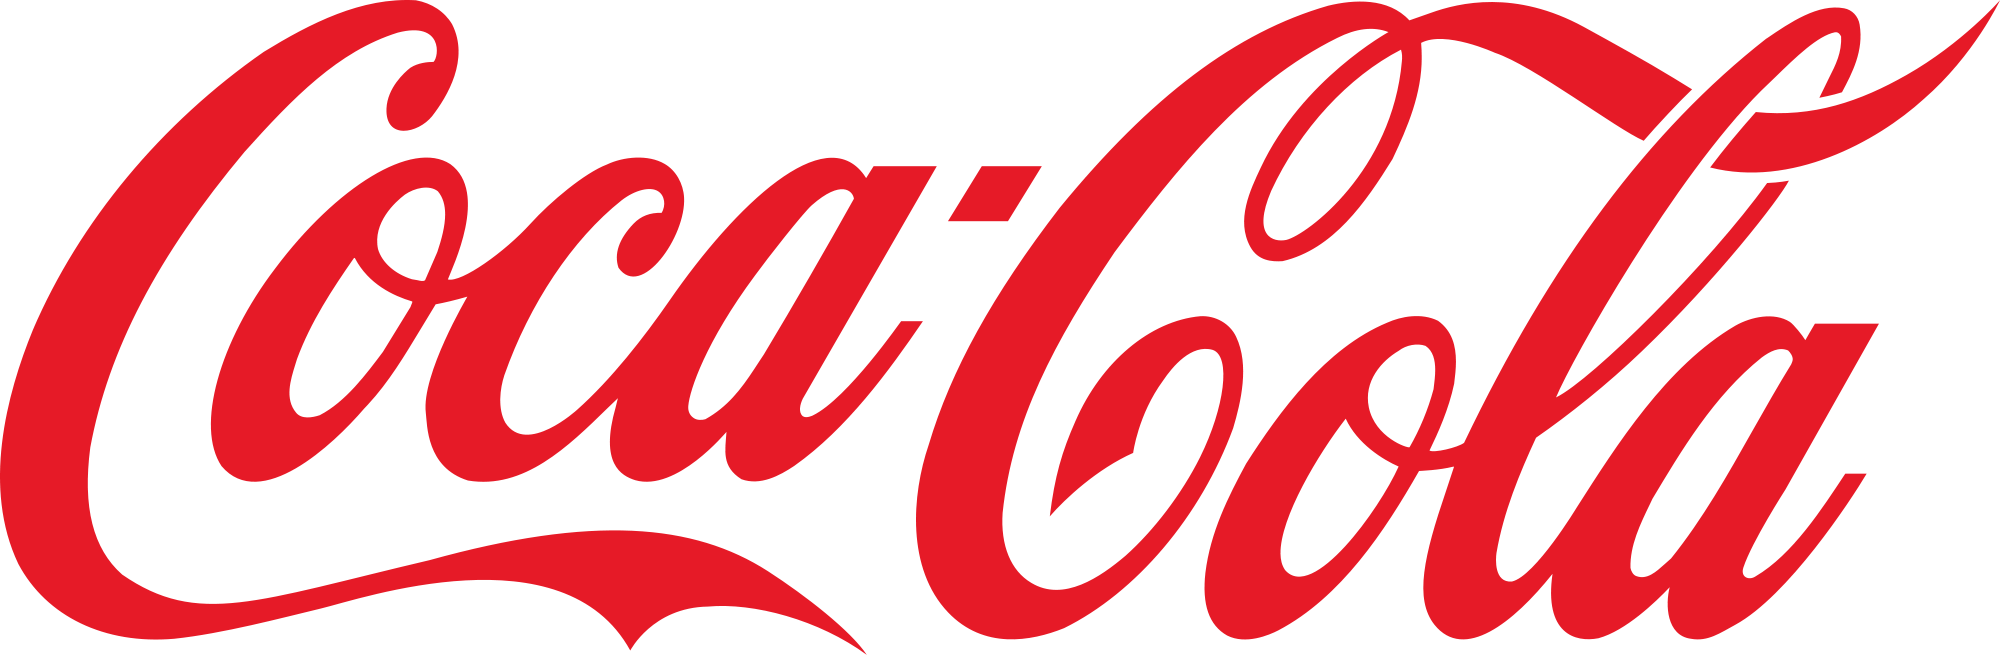 2000px-Coca-Cola_logo.png